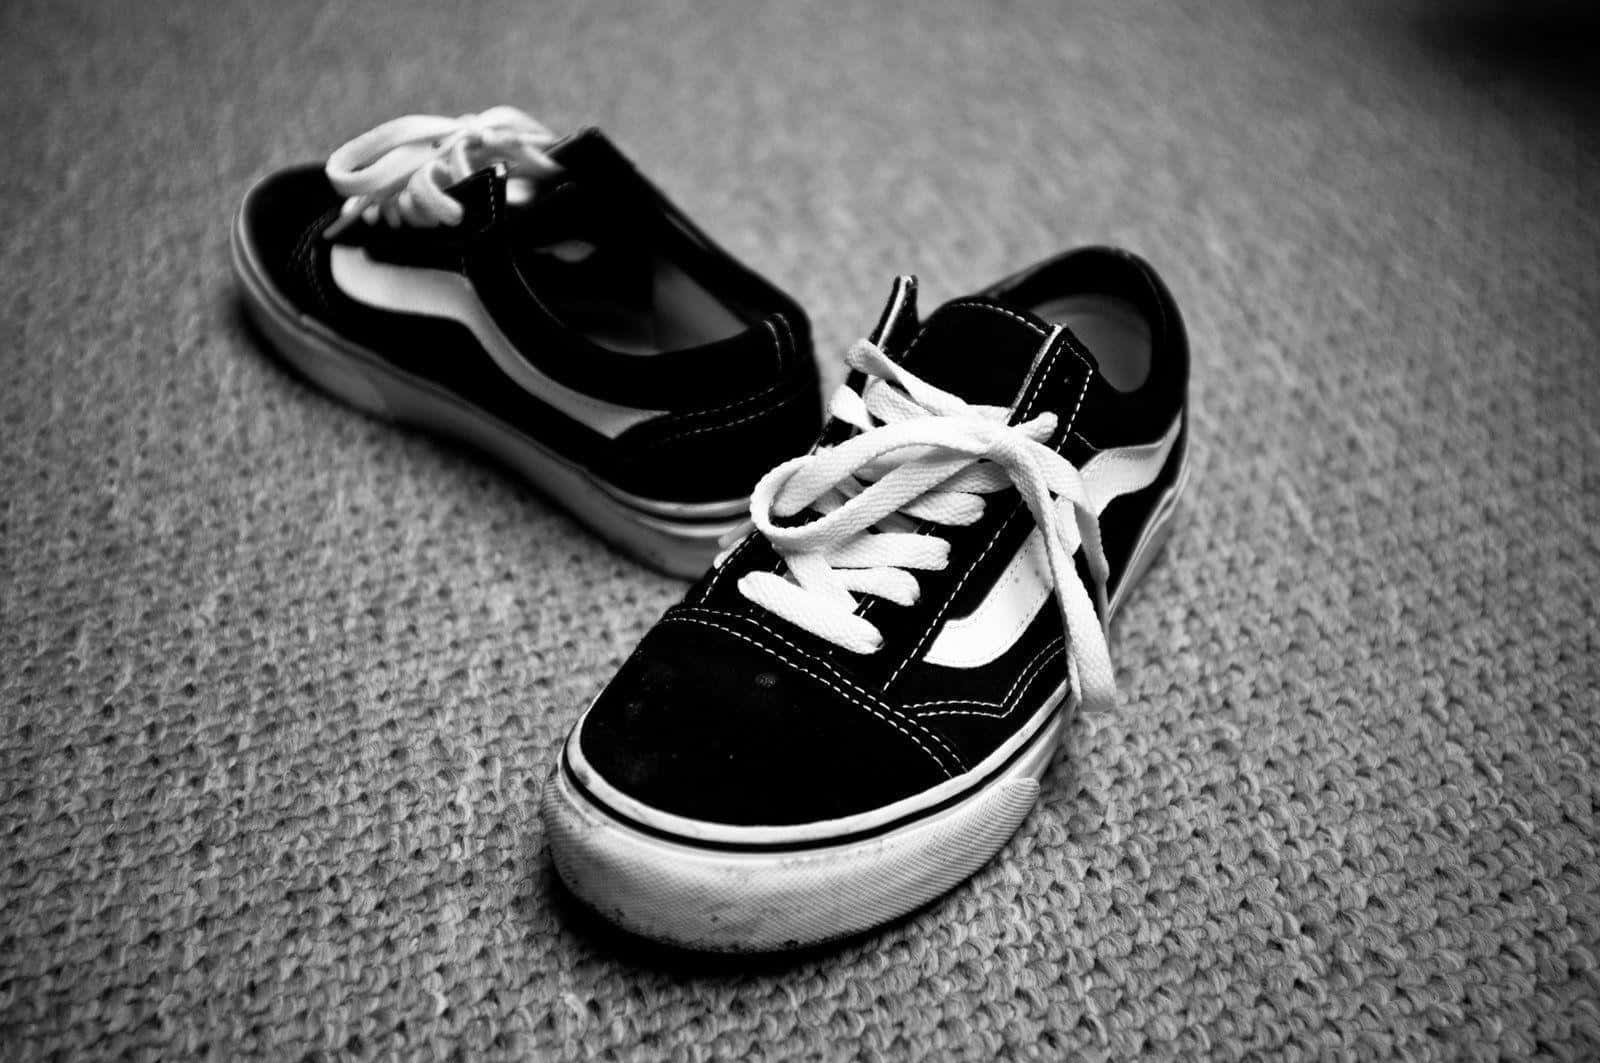 Vansold Skool Schuhe In Schwarz Und Weiß